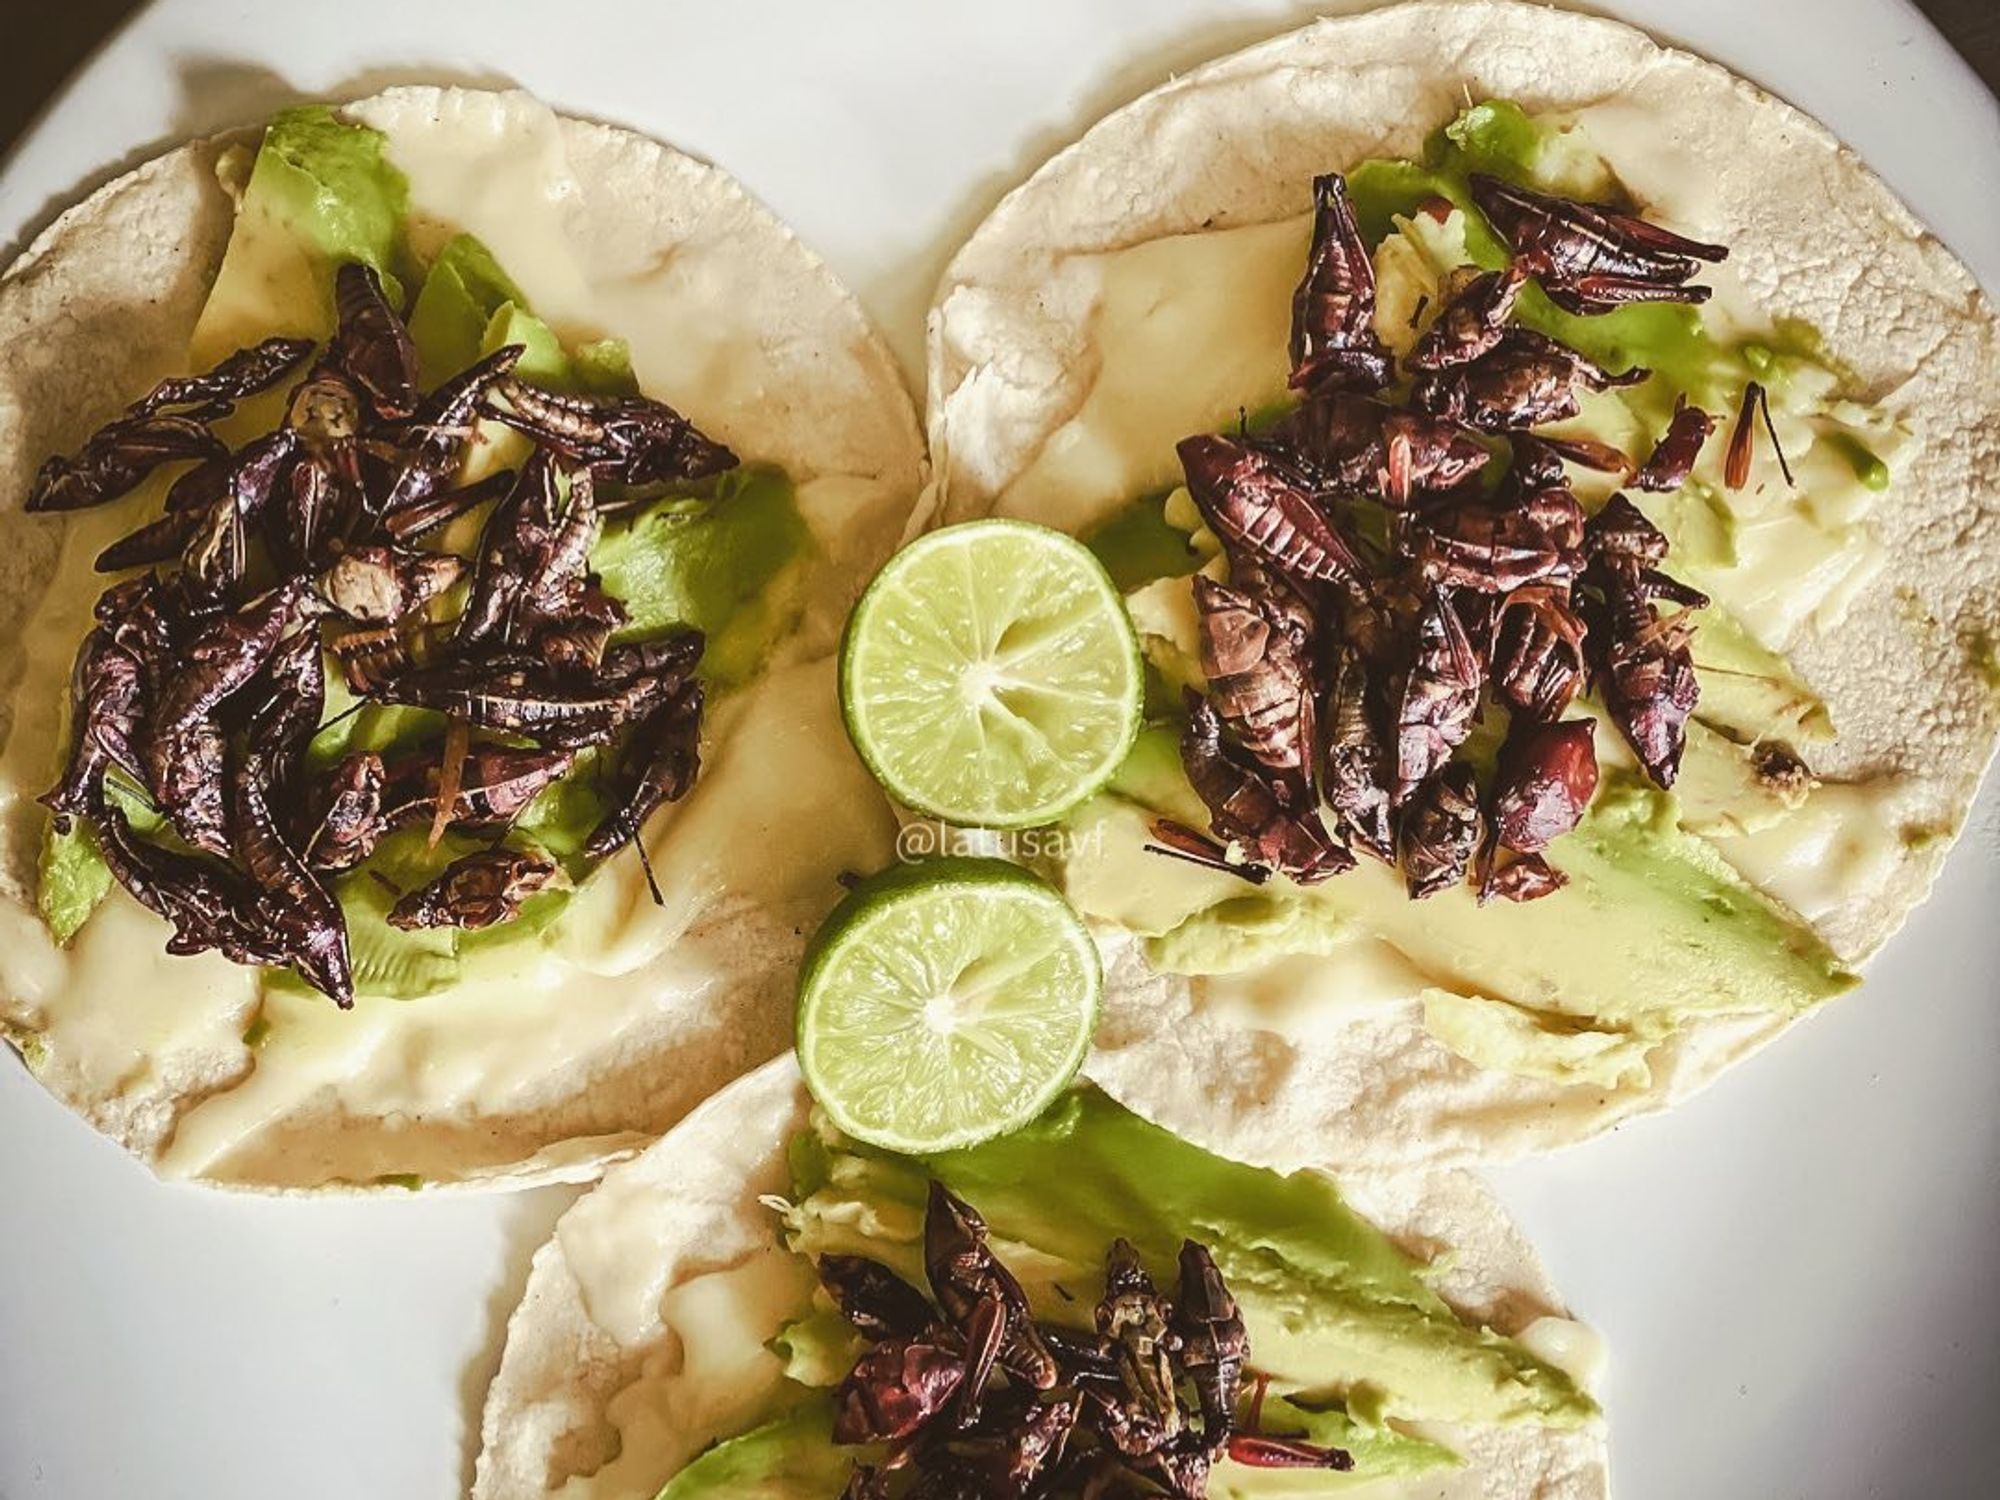 Grasshopper tacos